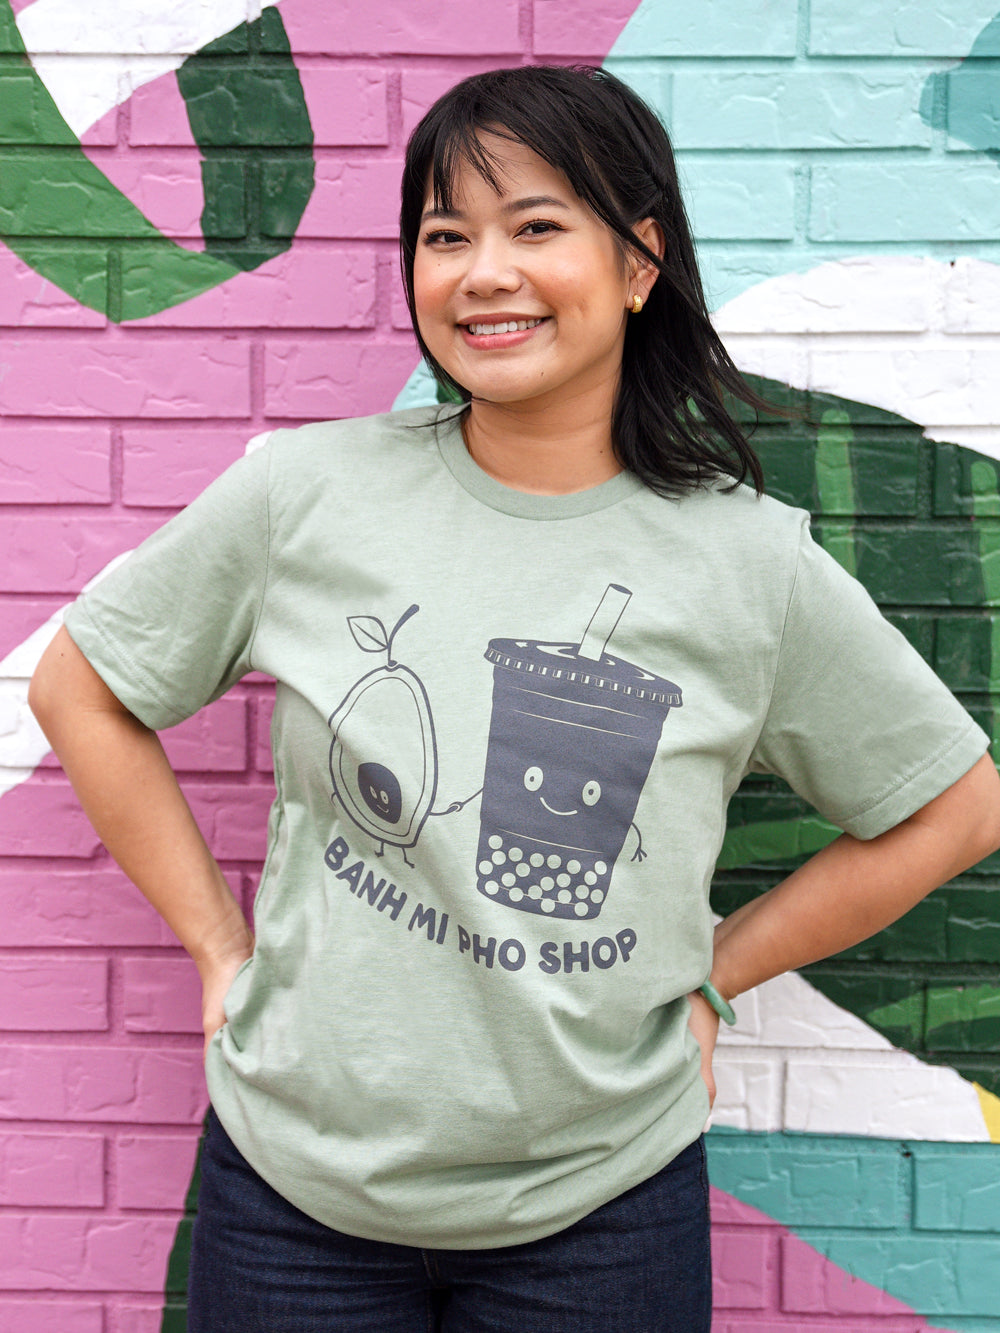 Banh Mi Pho Shop: Bubble Tea